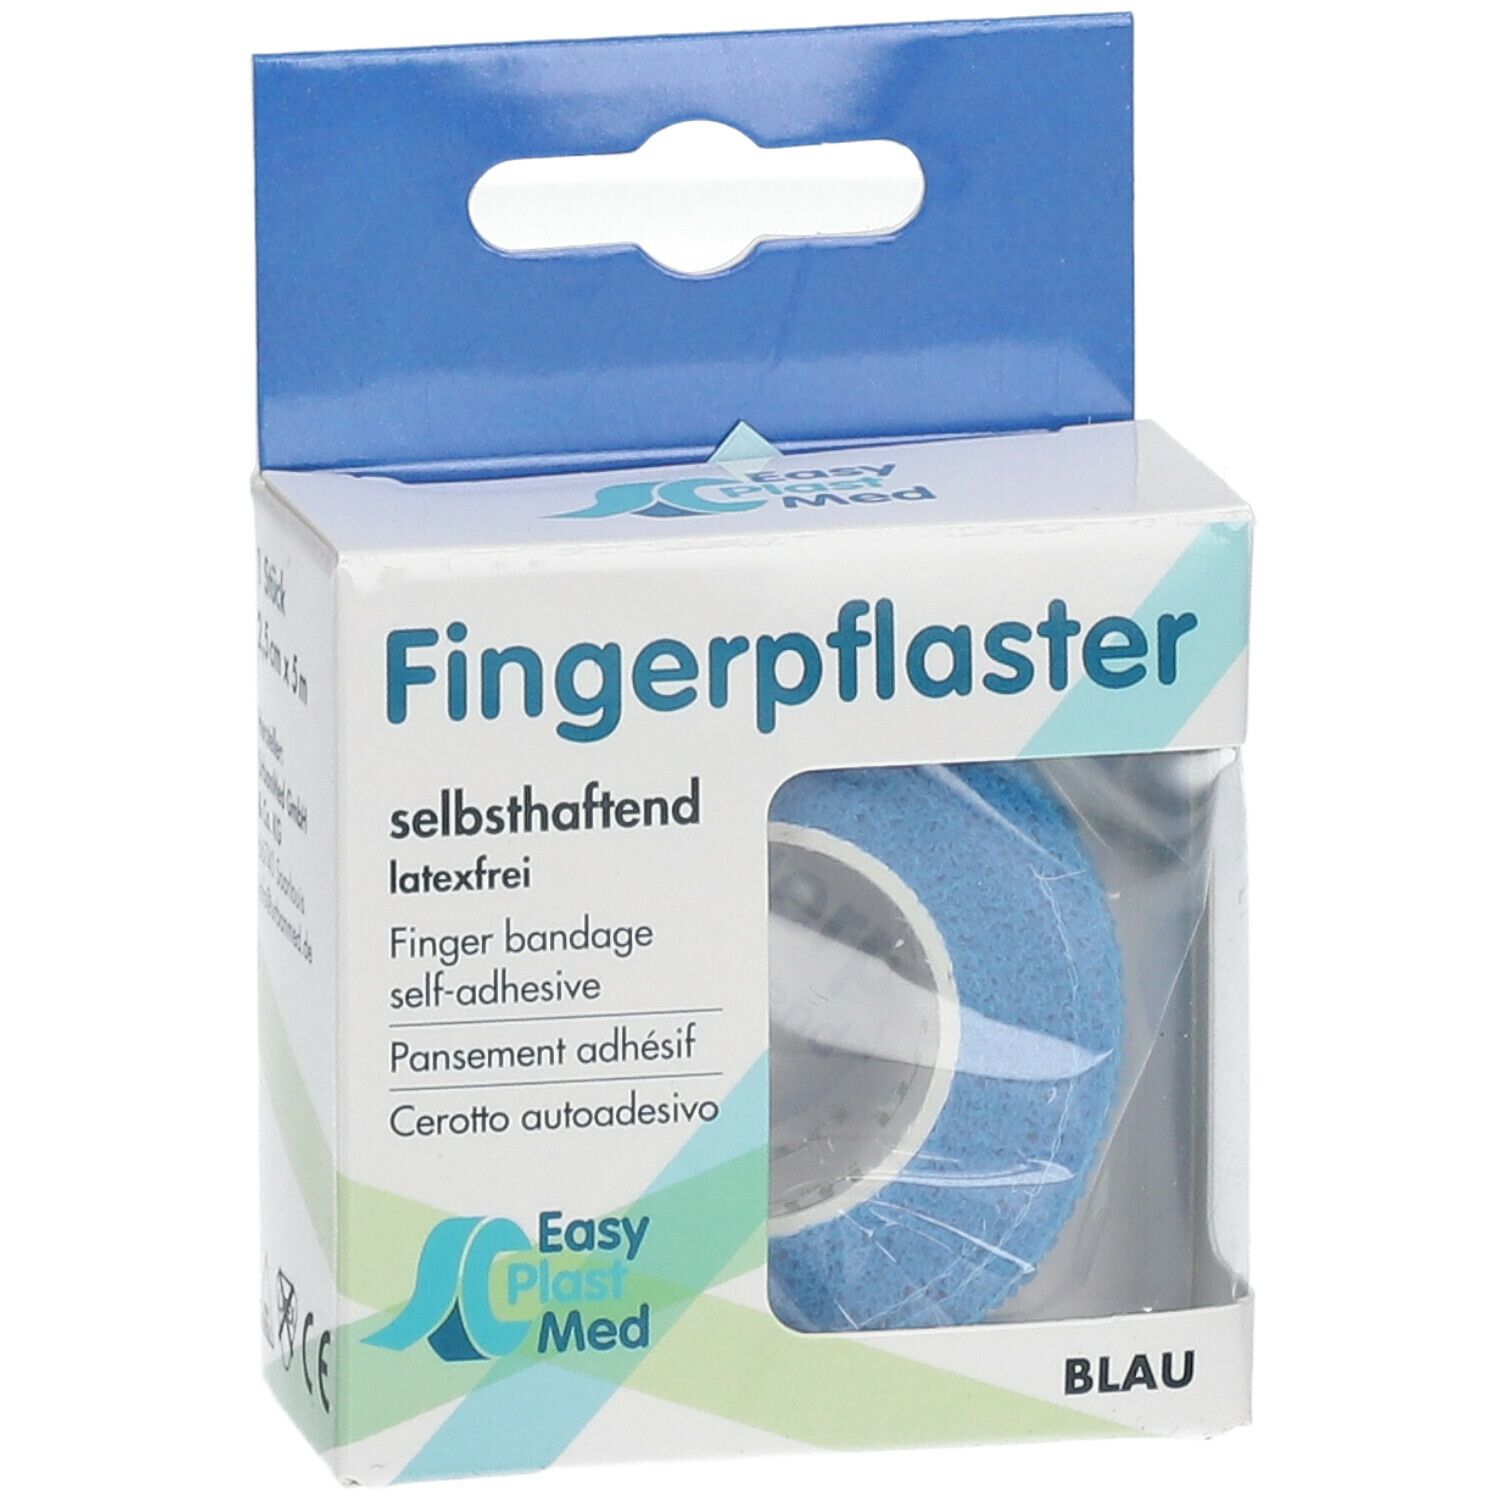 Easy Plast Med Fingerpflaster 2,5 cm x 5 m blau